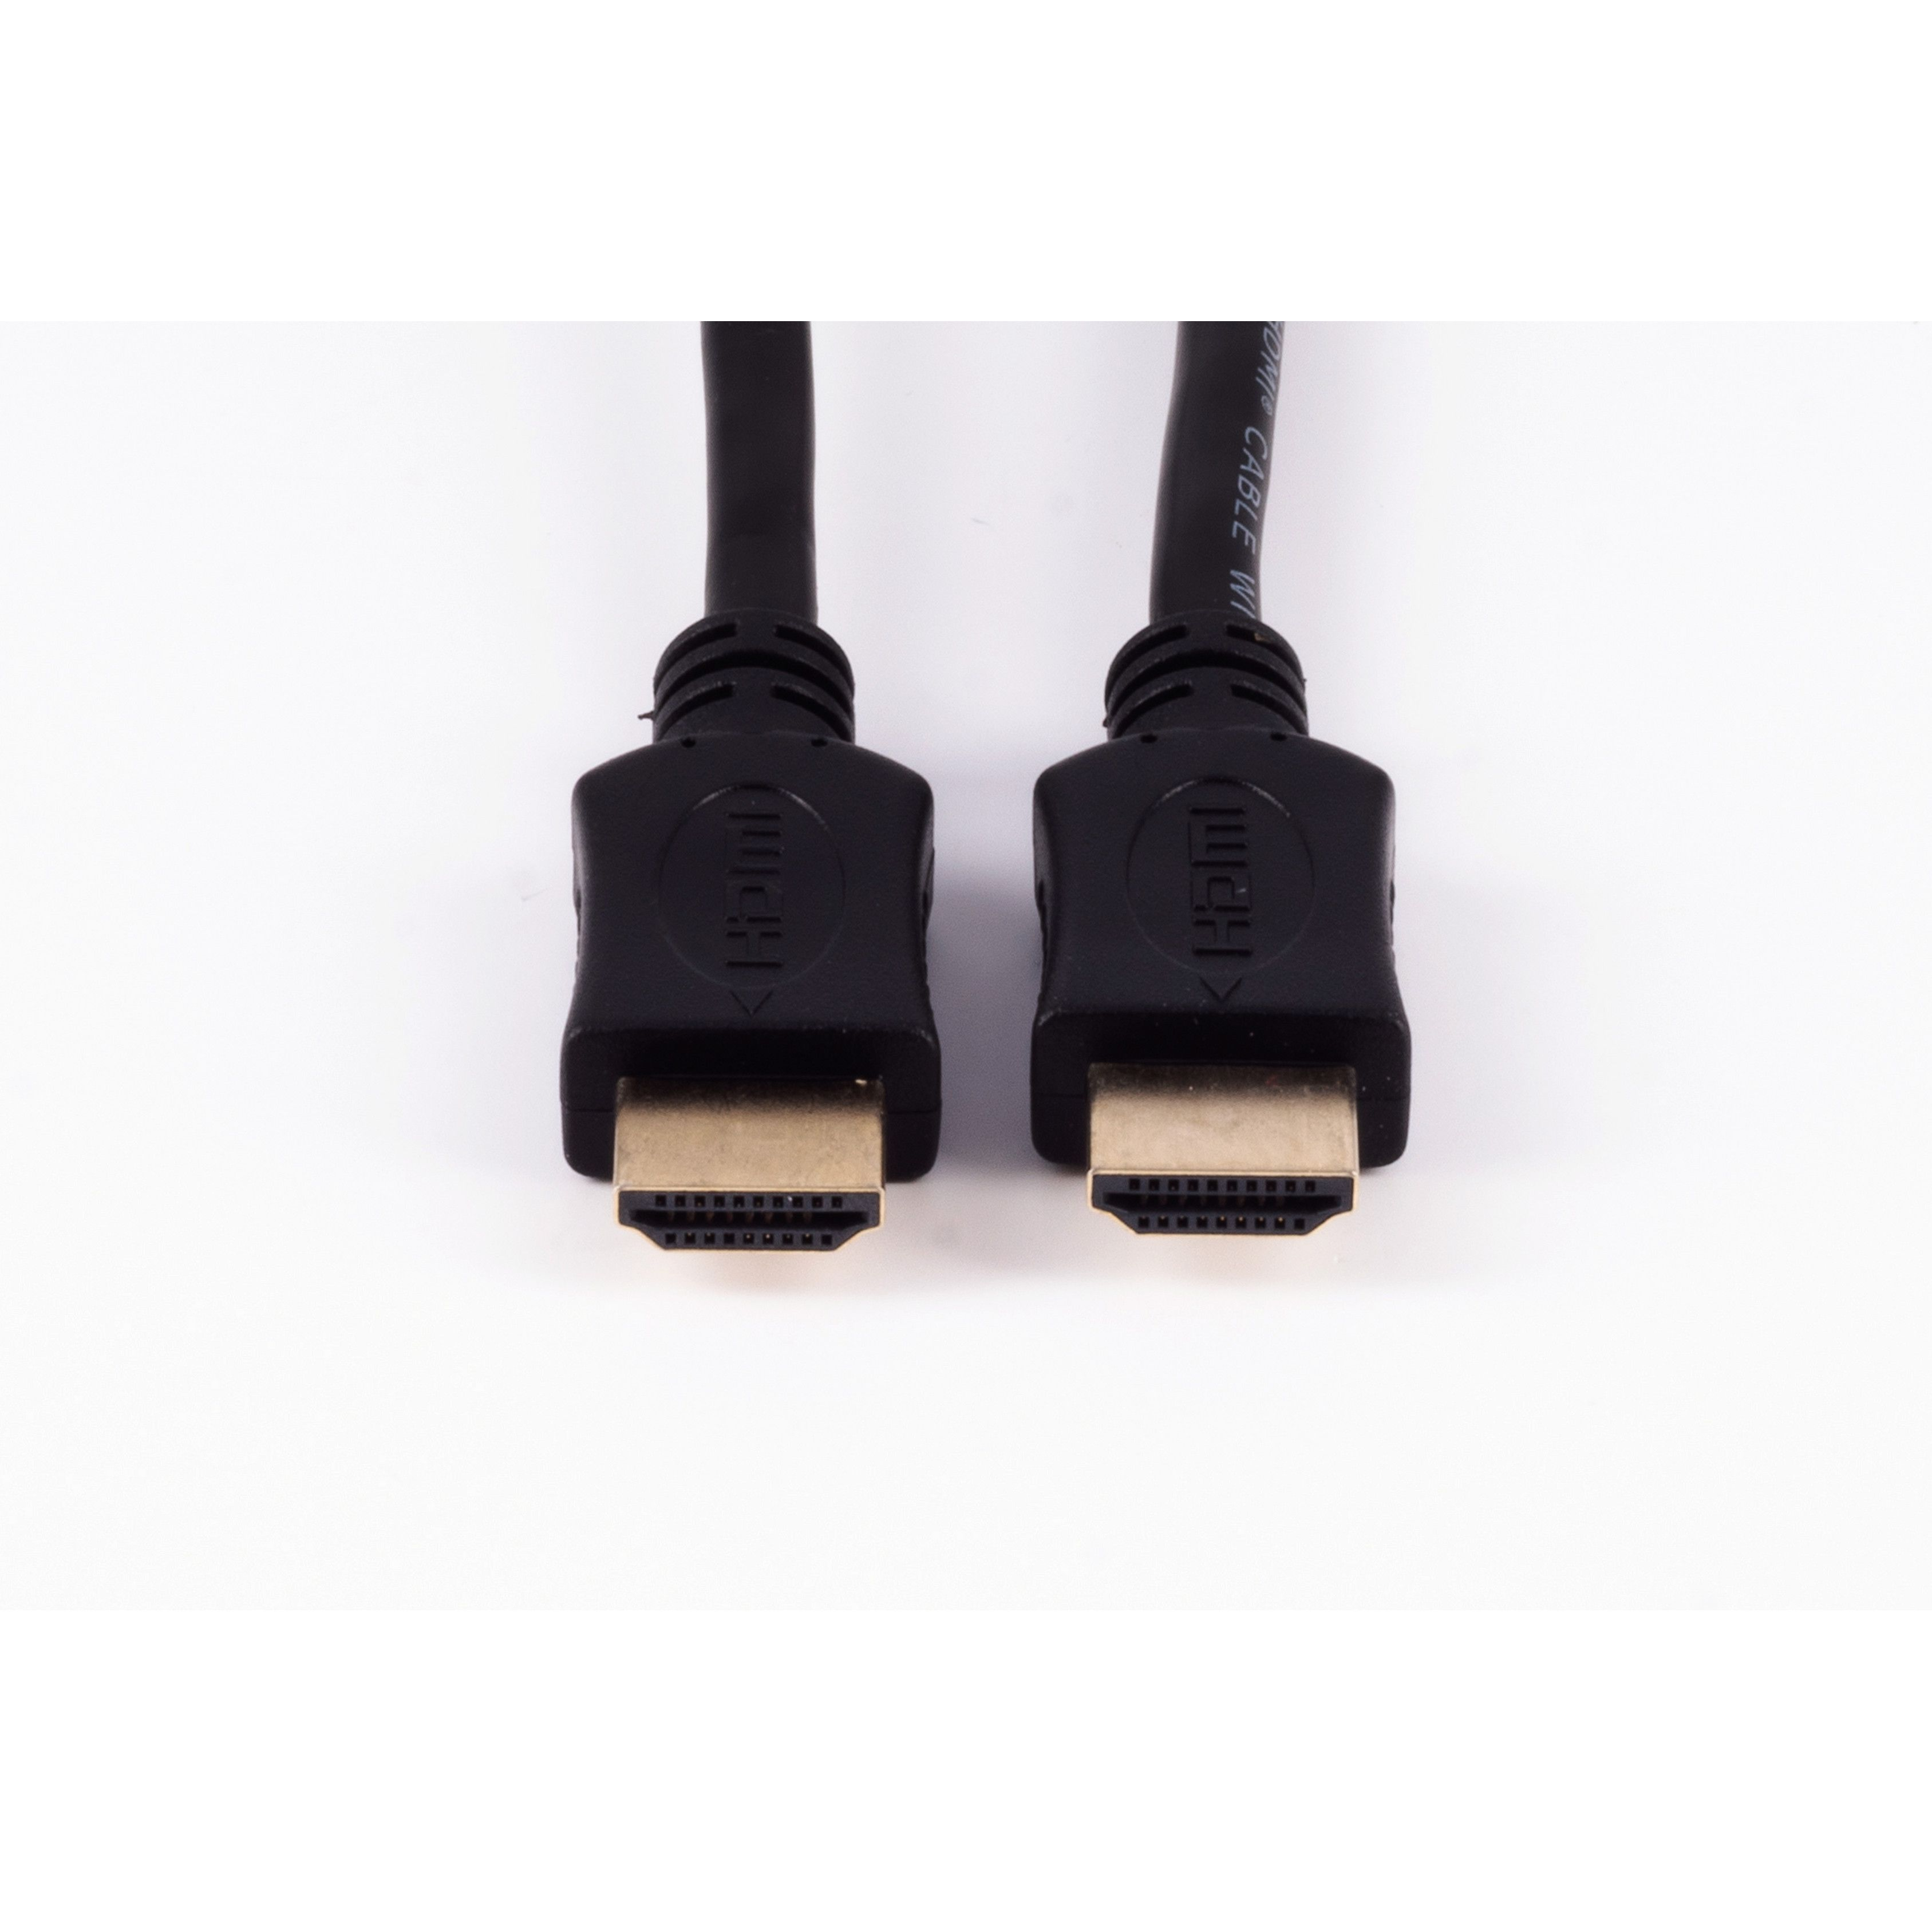 SHIVERPEAKS HDMI A-Stecker Kabel HEAC verg. HDMI 5m / HDMI A-Stecker